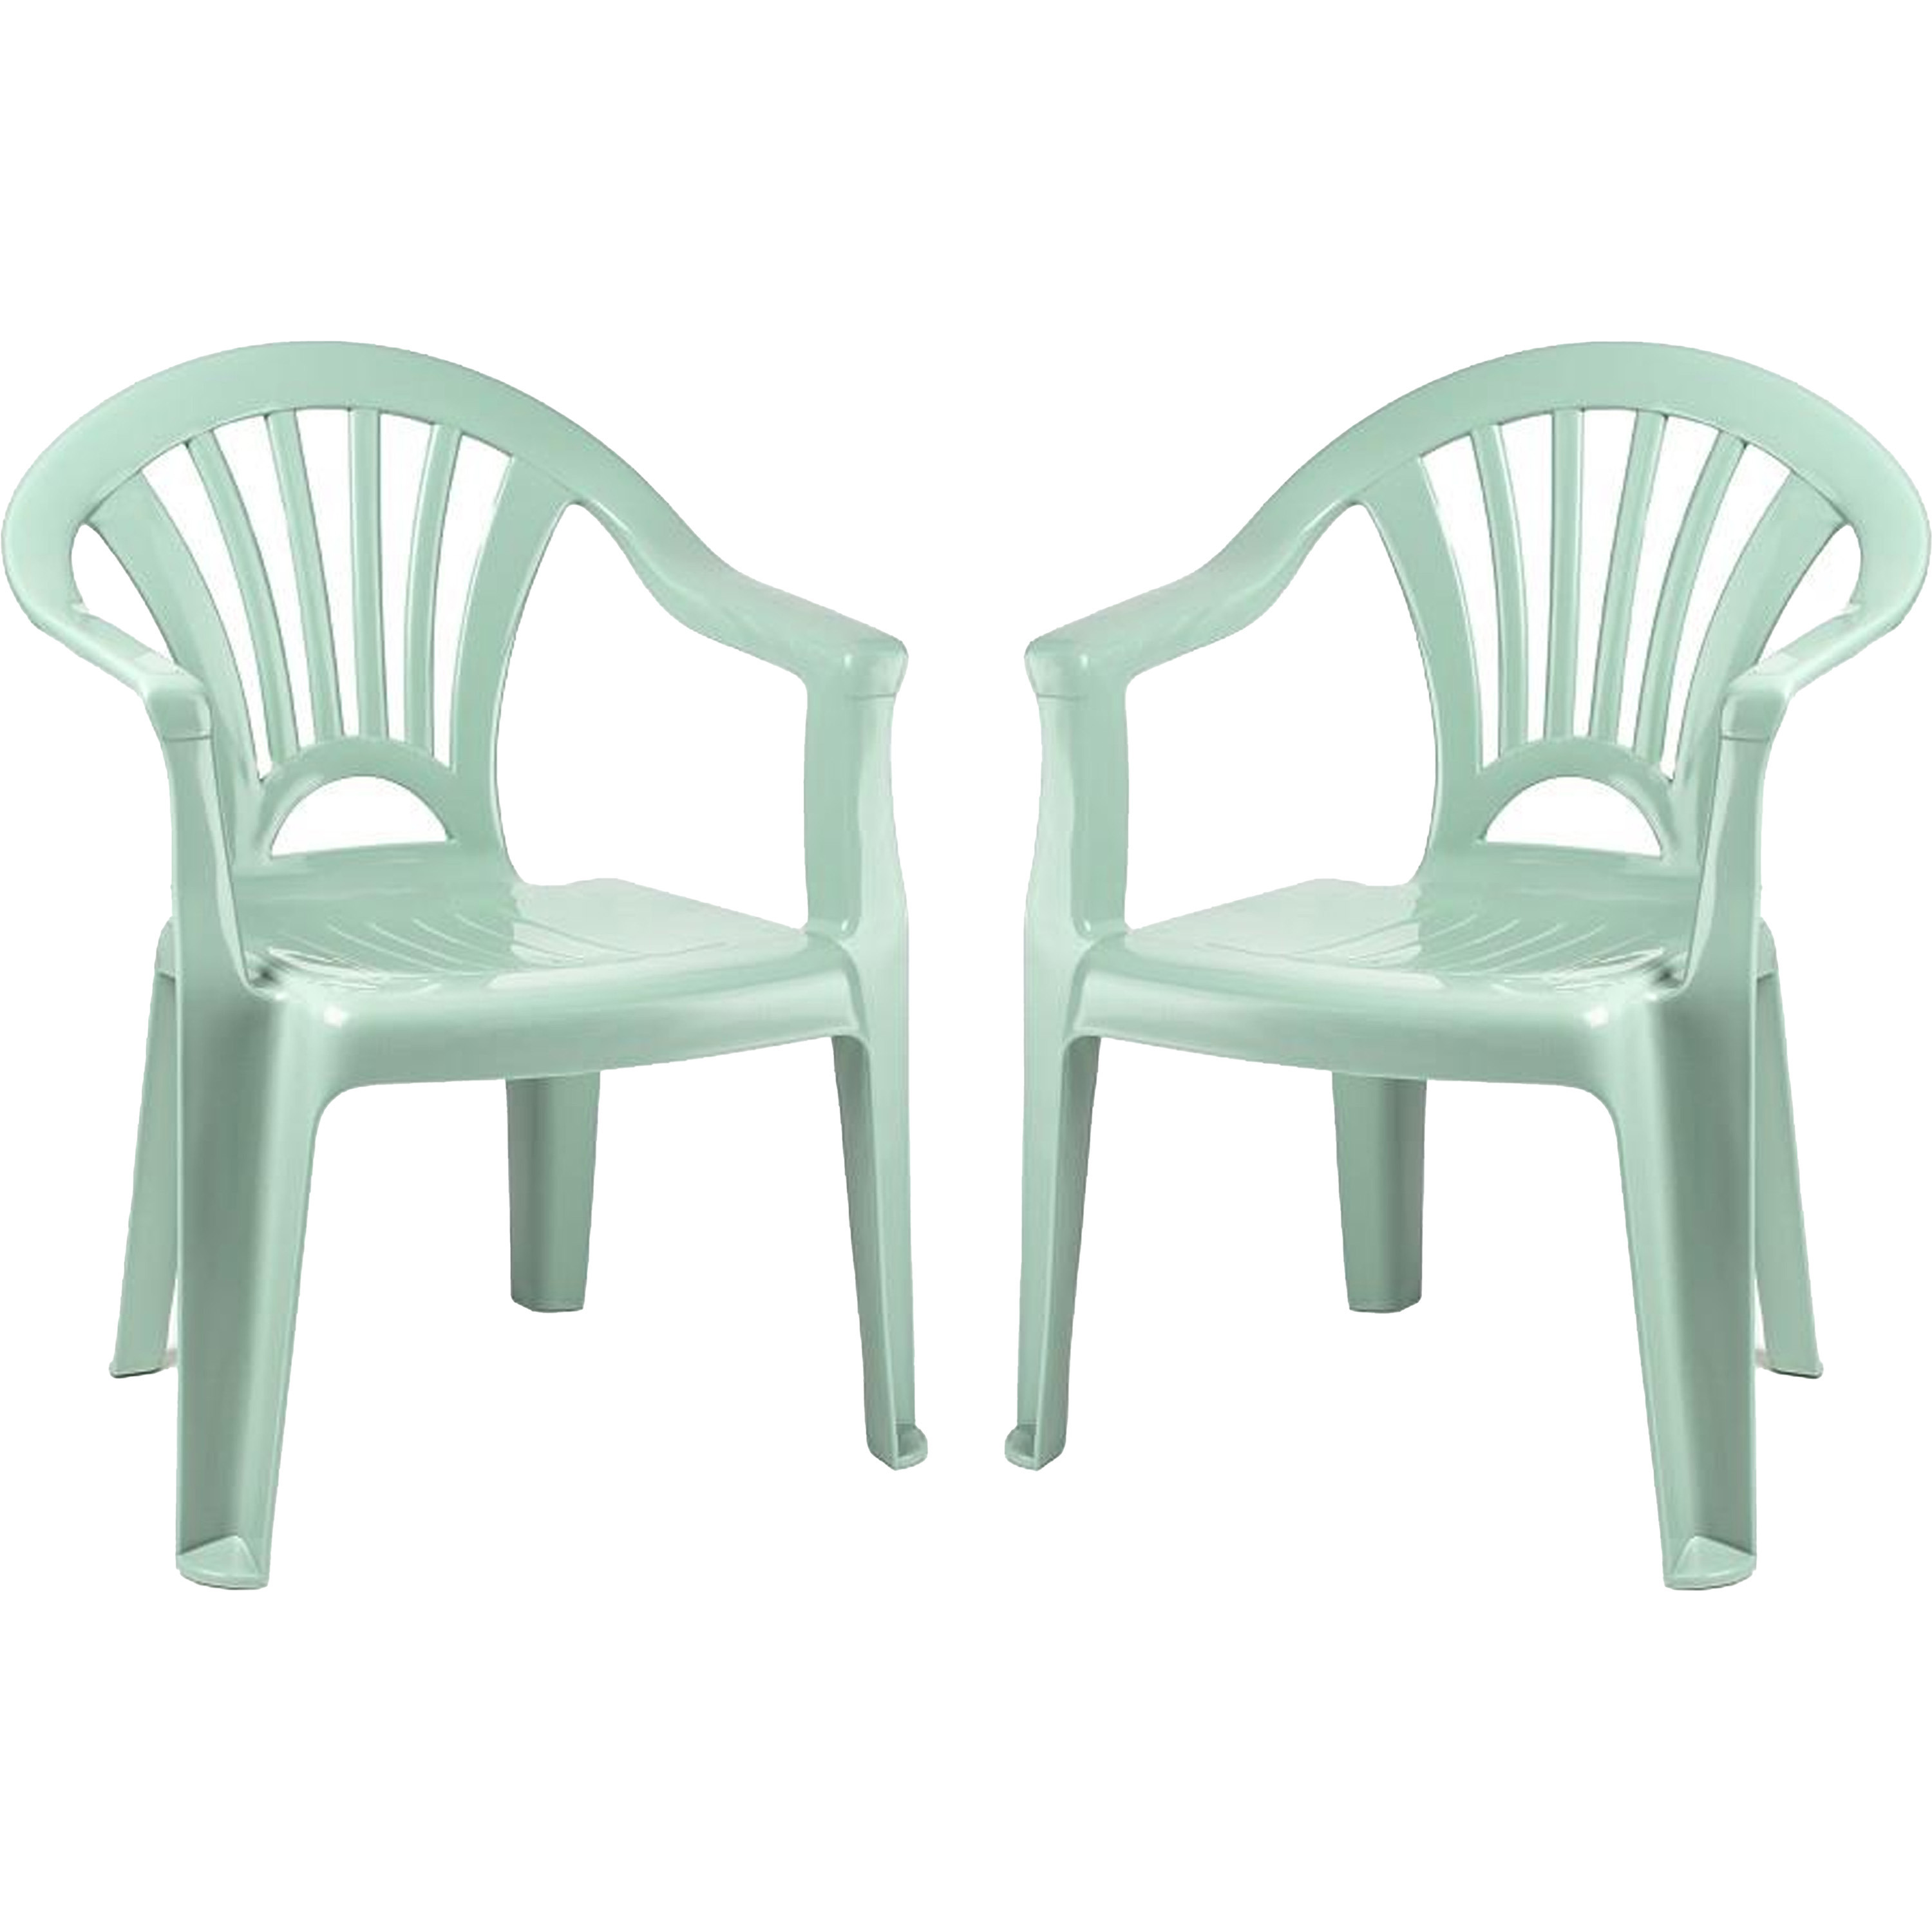 PlasticForte Kinderstoel - 4x stuks - kunststof - mintgroen - 35 x 28 x 50 cm - tuin/camping/slaapkamer -